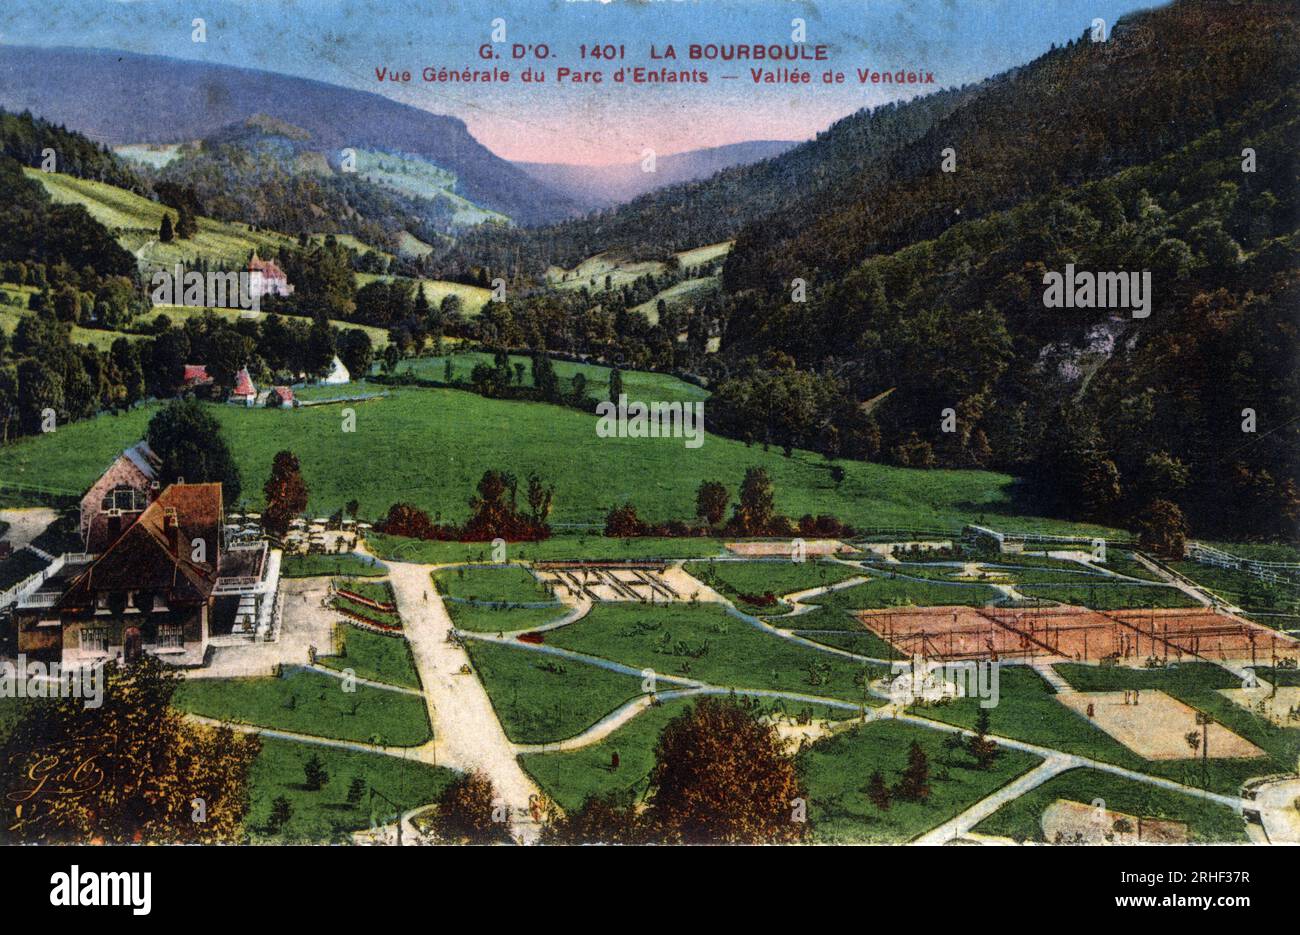 Auvergne, Puy-de-Dome (63), La Bourboule : vue generale du parc d'enfants dans la vallee de Vendeix - carte postale debut 20eme siecle Stock Photo